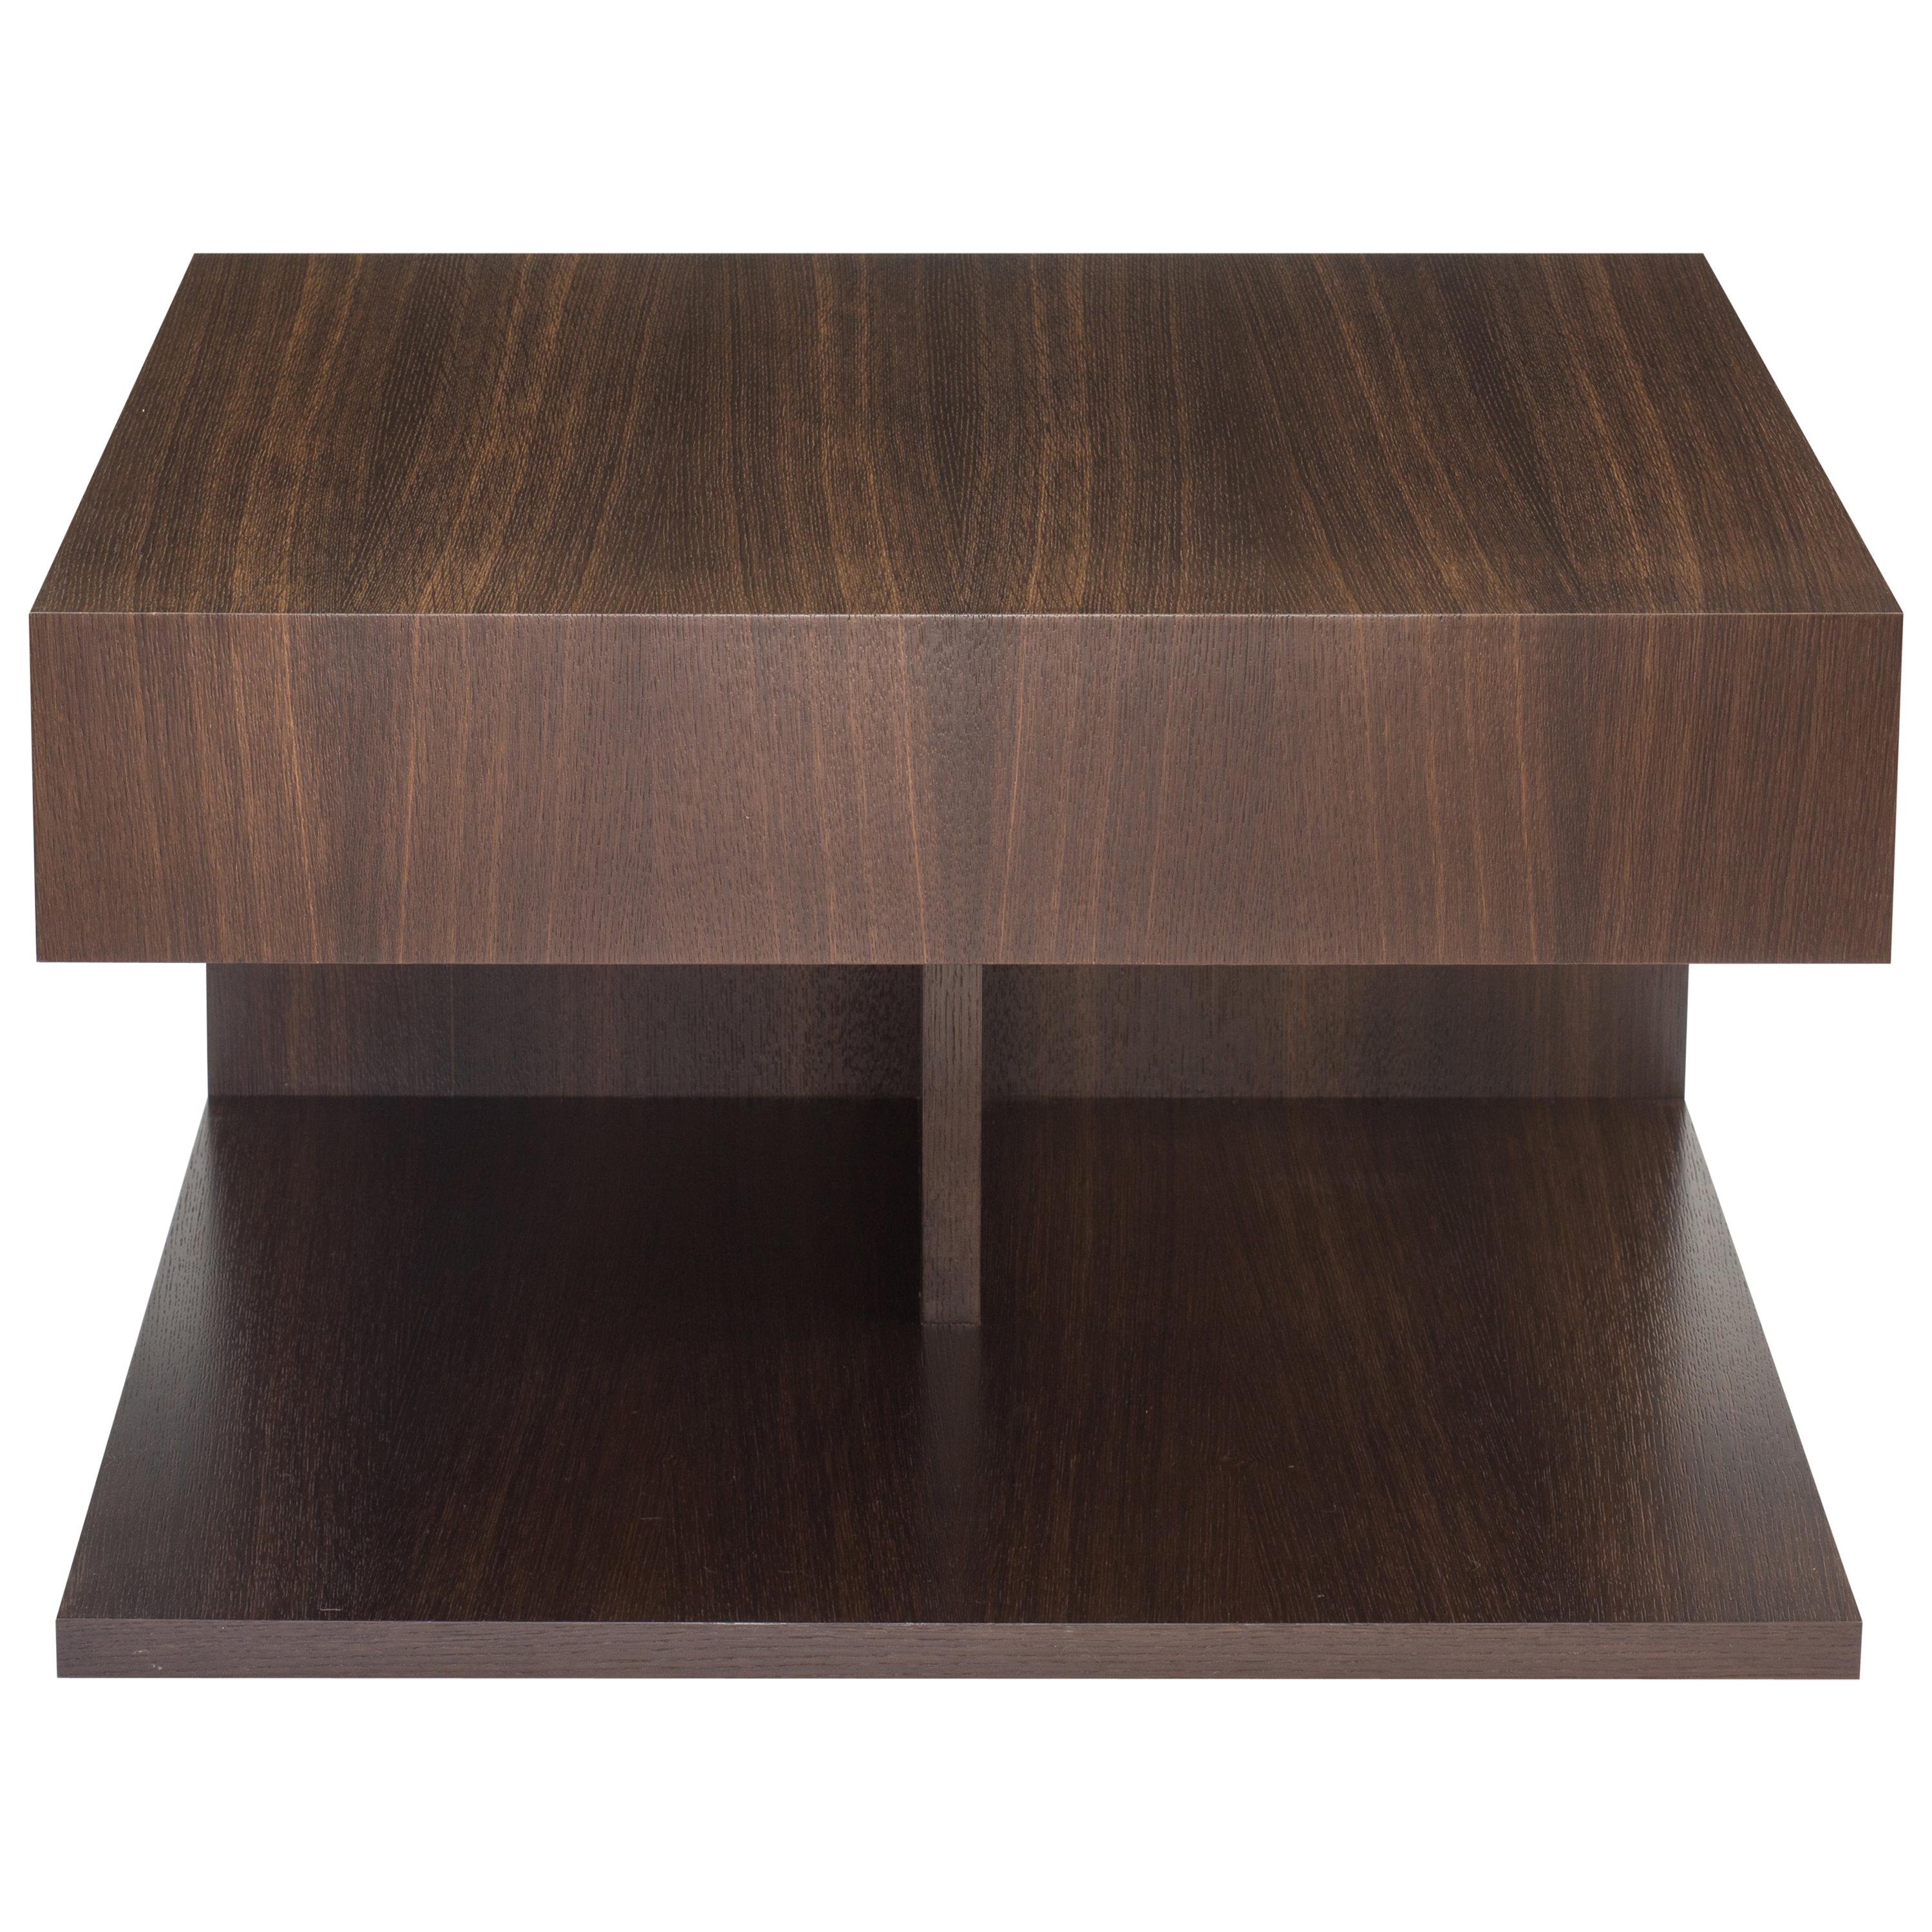 Table d'extrémité en bois moderne en chêne ébène fumé, par Studio DiPaolo